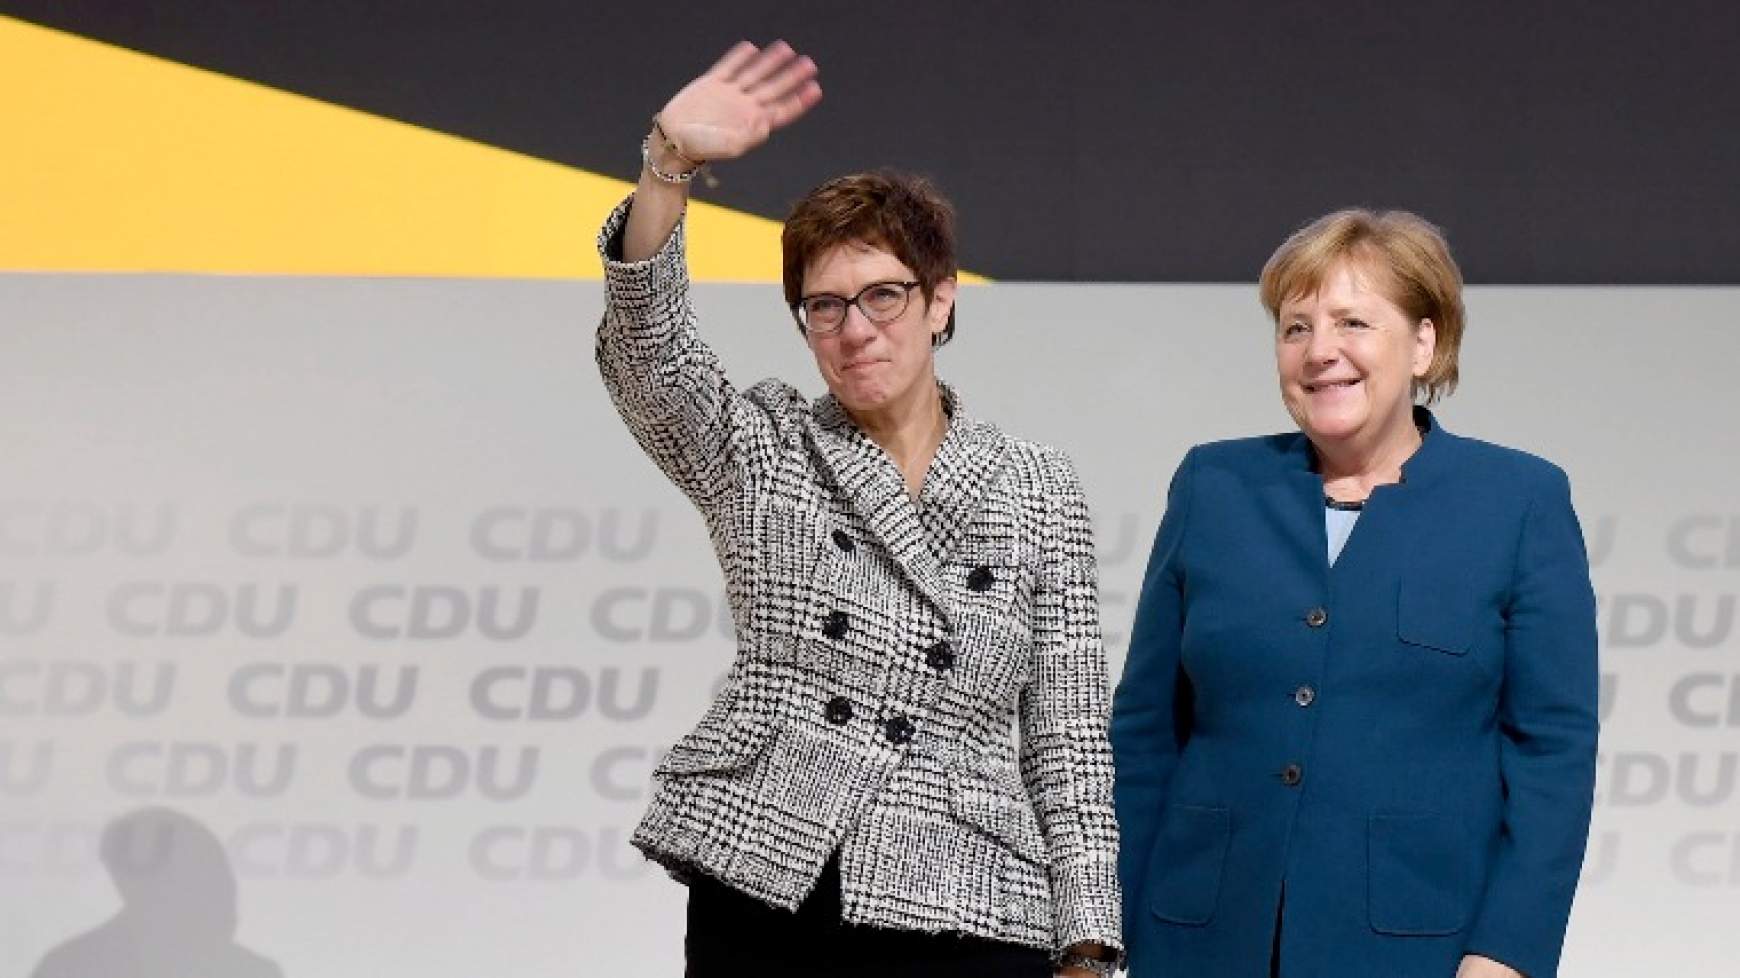 CDU-elnökválasztás